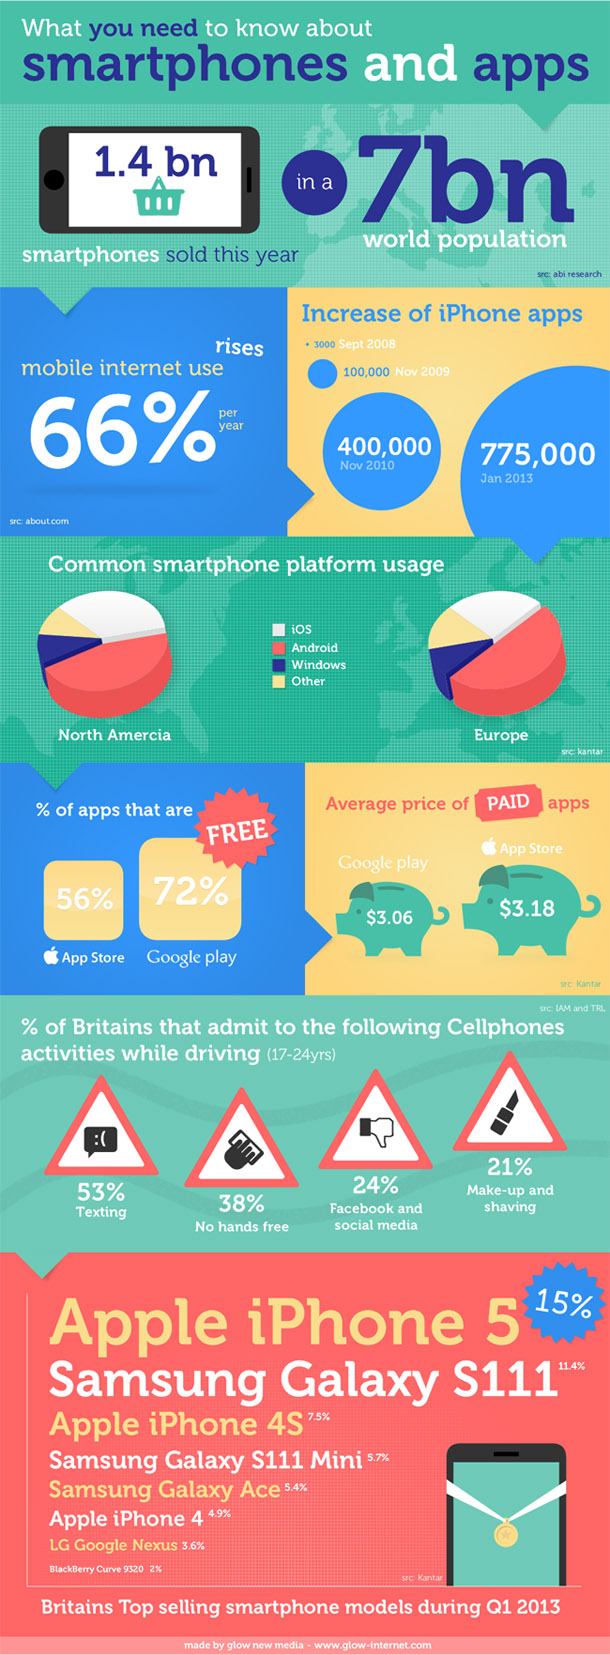 smartphones-apps-infographic